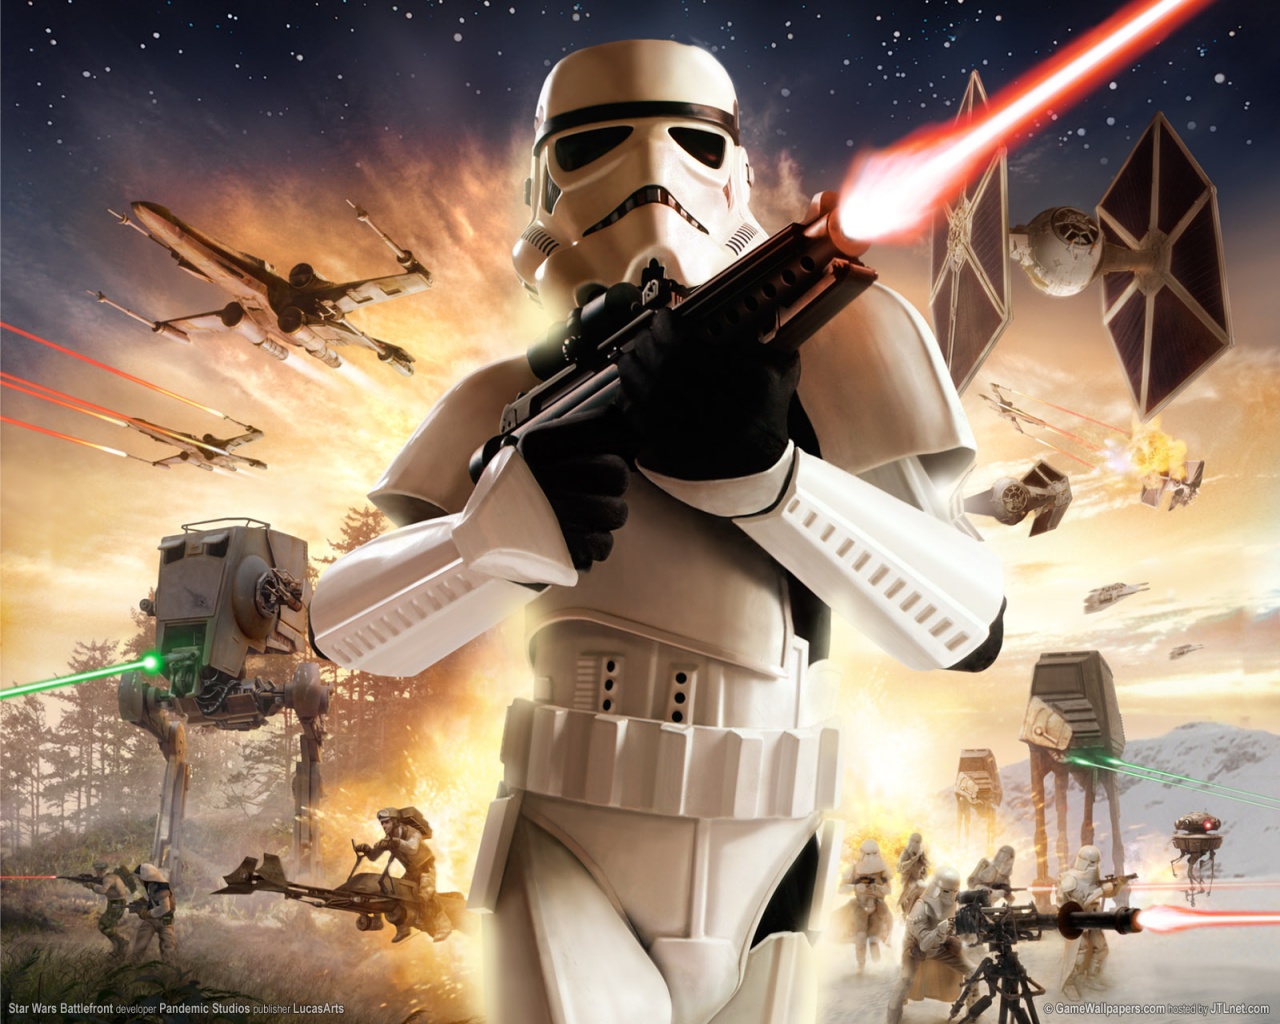 Star wars battlefront for mac free download torrent